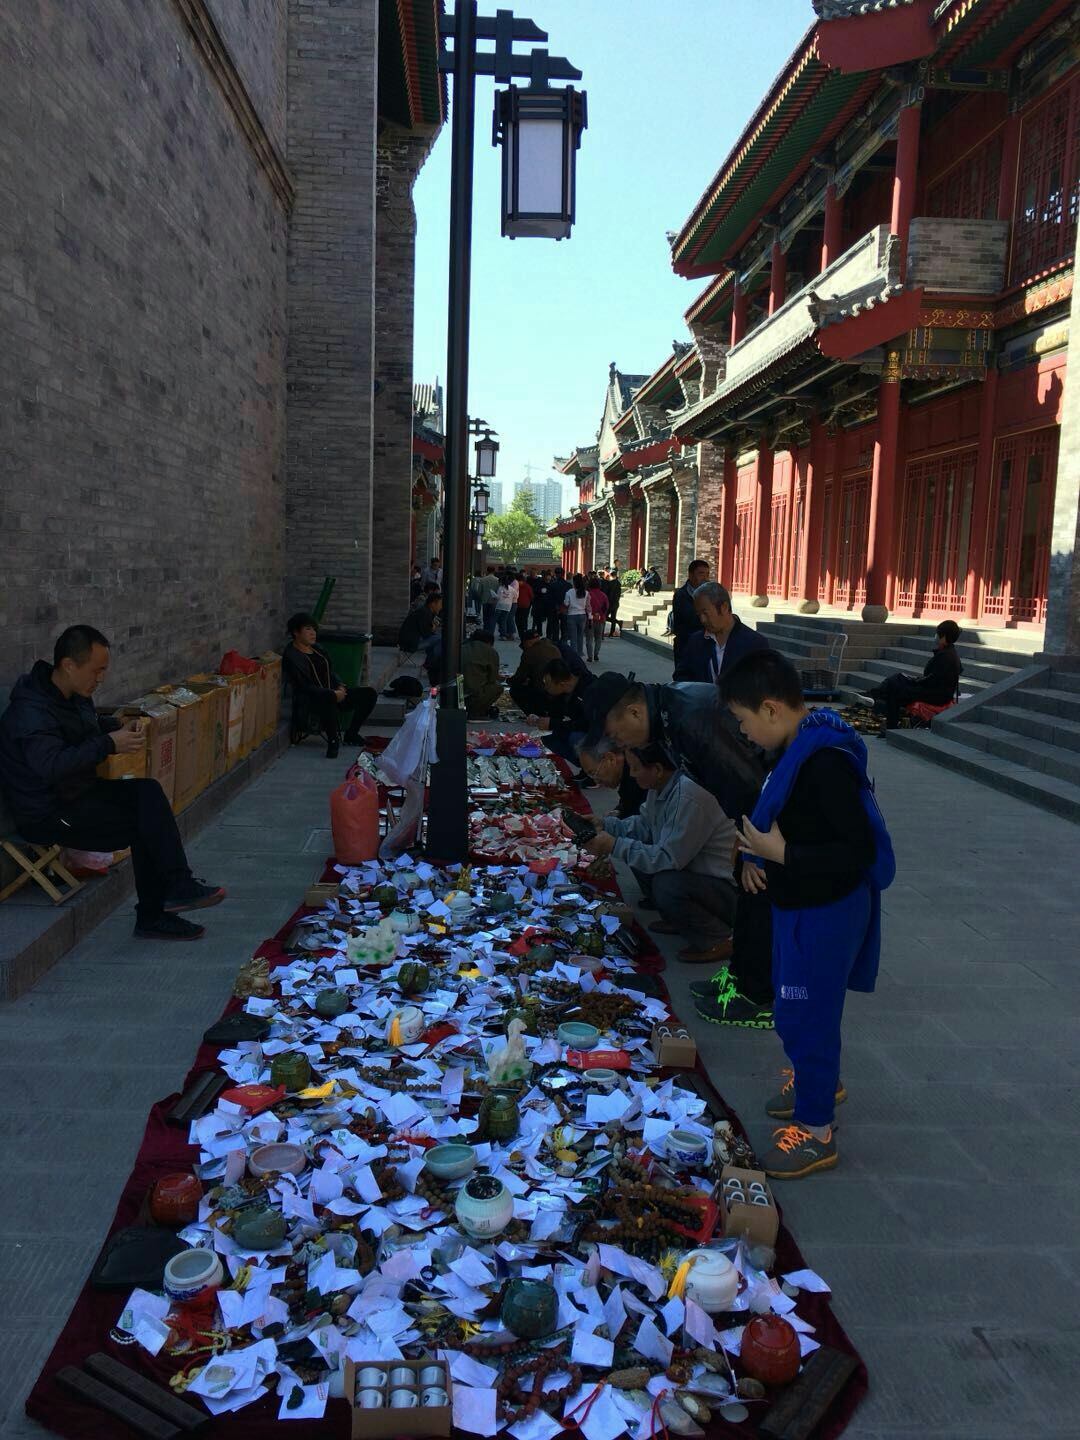 潘家园市场去看看,淘点中意的东西回来,北京潘家园曾经是全国各地收藏